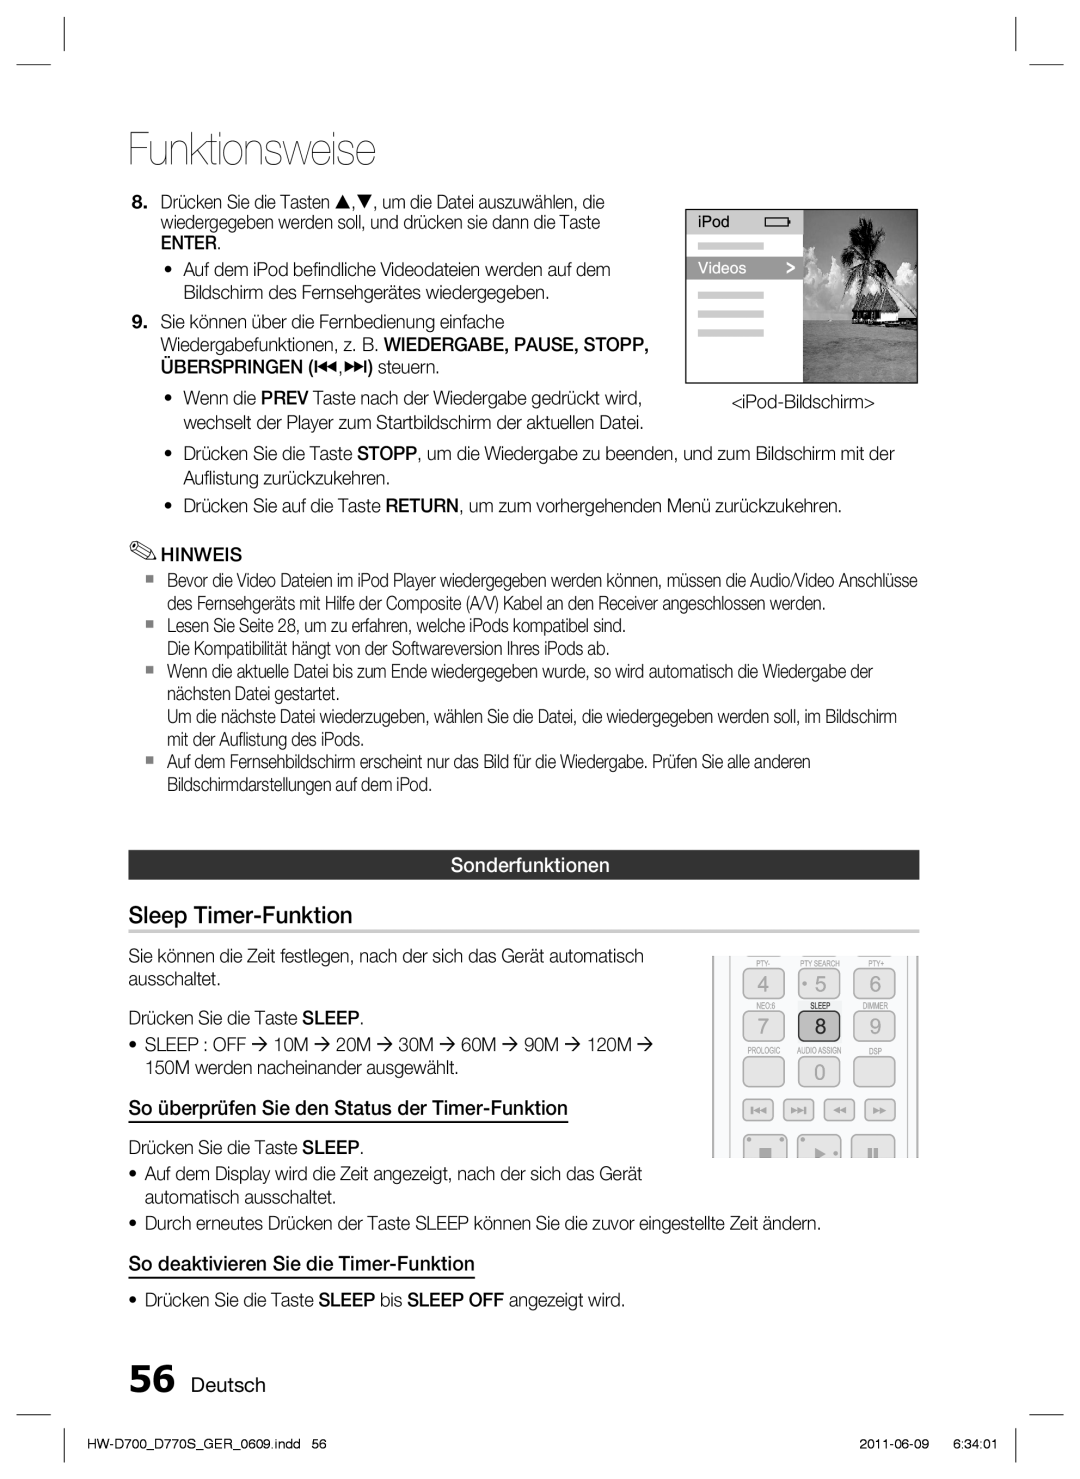 Samsung HW-D770S/EN manual Sleep Timer-Funktion, Sonderfunktionen, So überprüfen Sie den Status der Timer-Funktion, Deutsch 